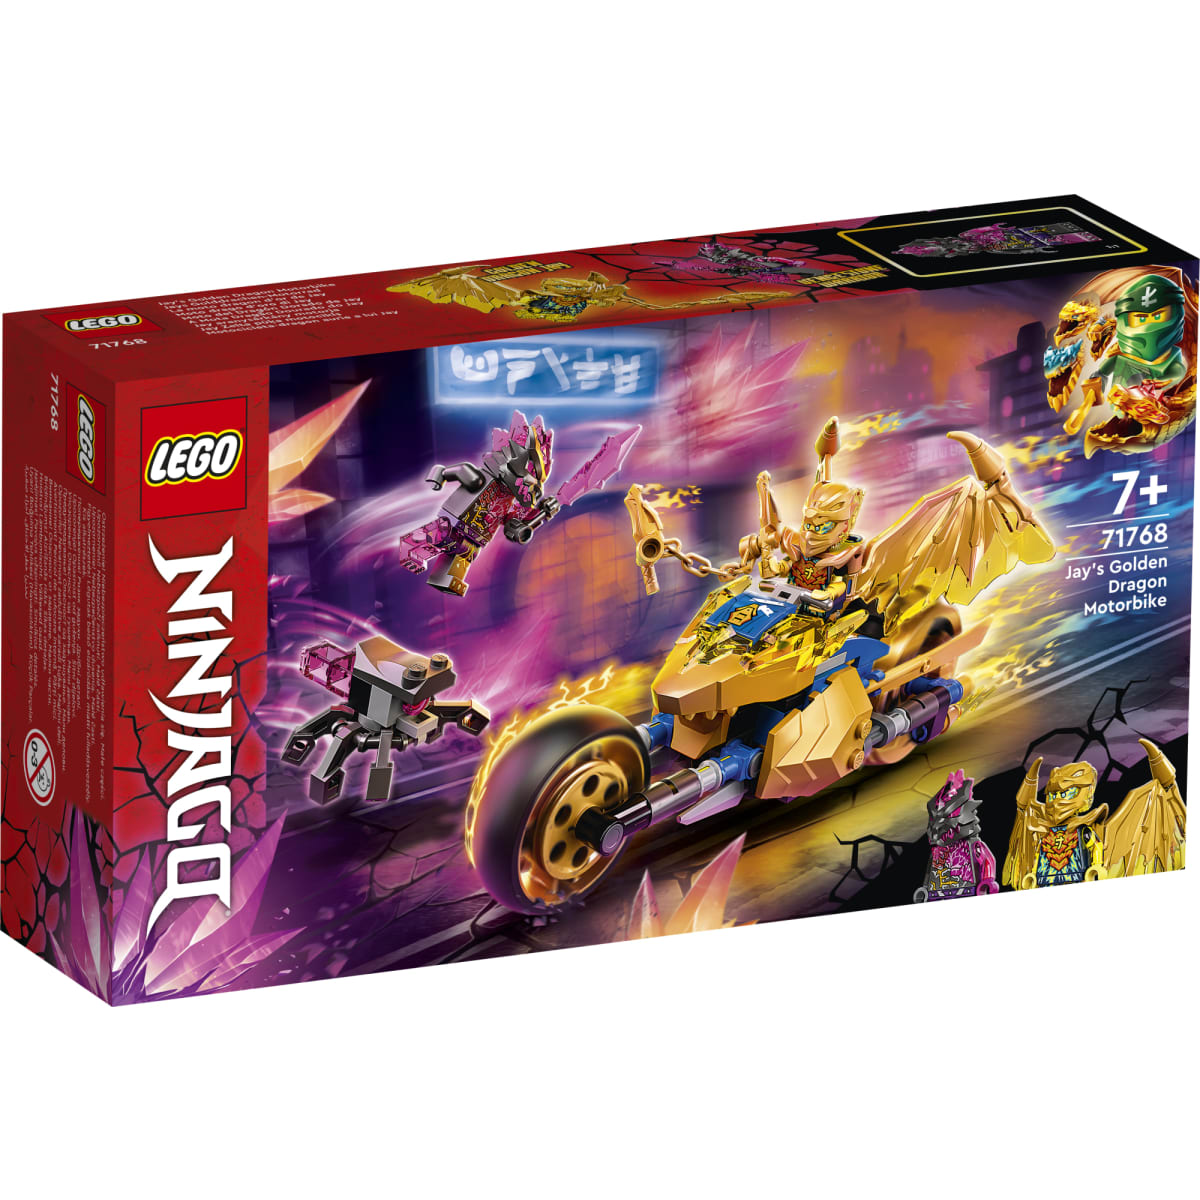 LEGO Ninjago 71768 Jayn kultainen lohikäärmemoottoripyörä | Karkkainen.com  verkkokauppa